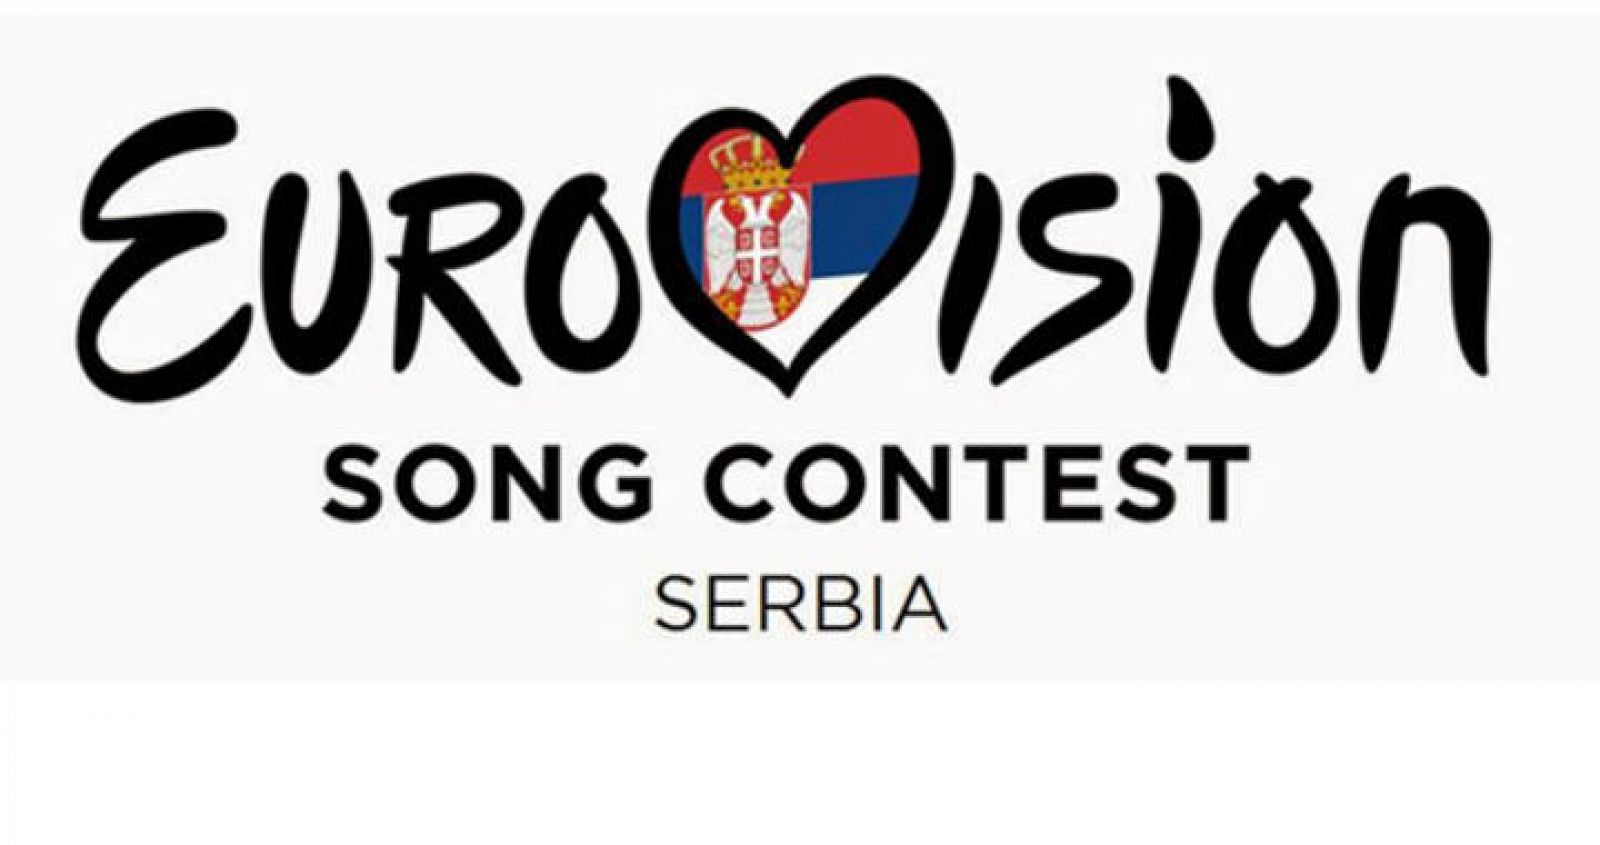  Serbia regresa al festival